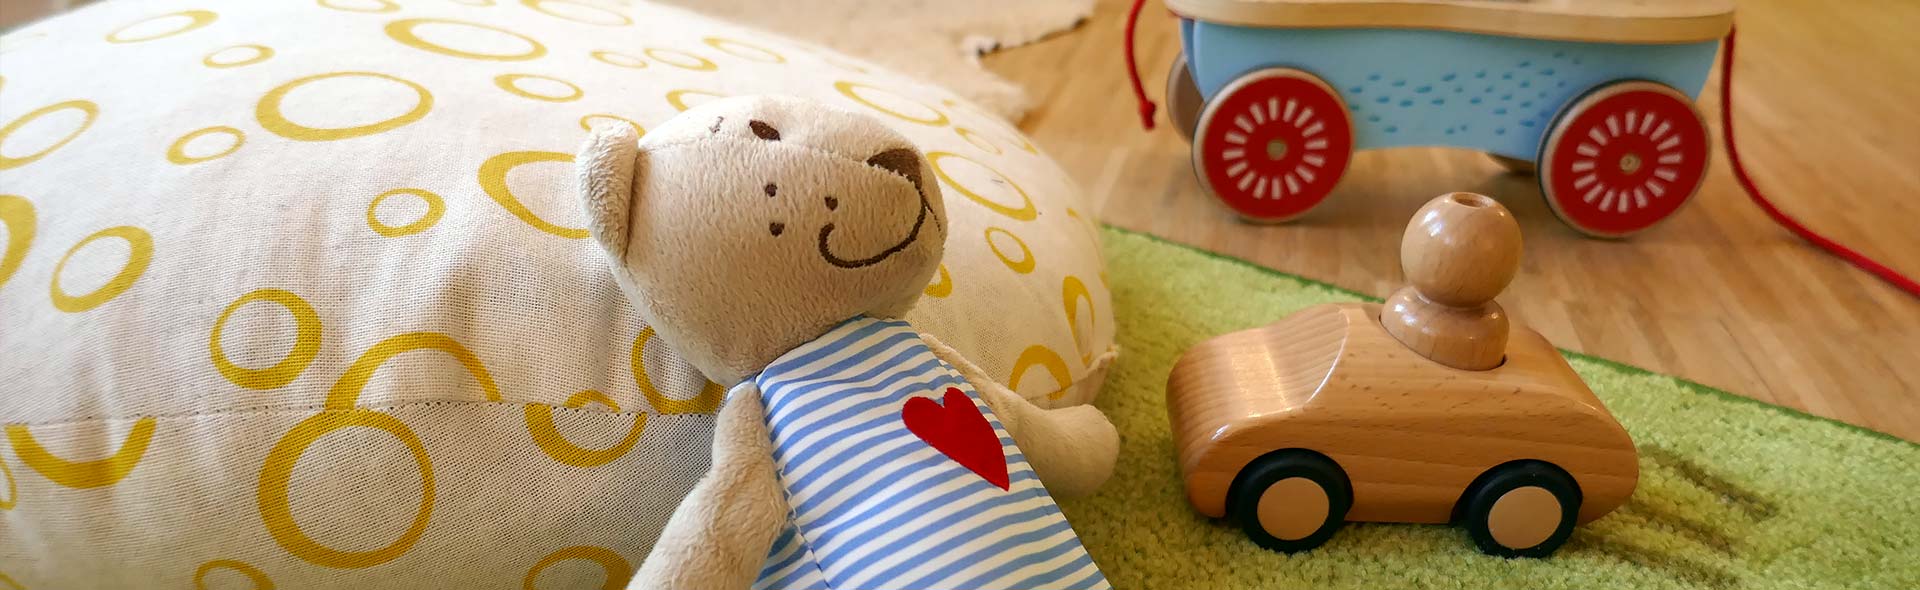 OJC-Greifswald: Im Kinderzimmer der Krabbelgruppe ein Teddy und Spielsachen